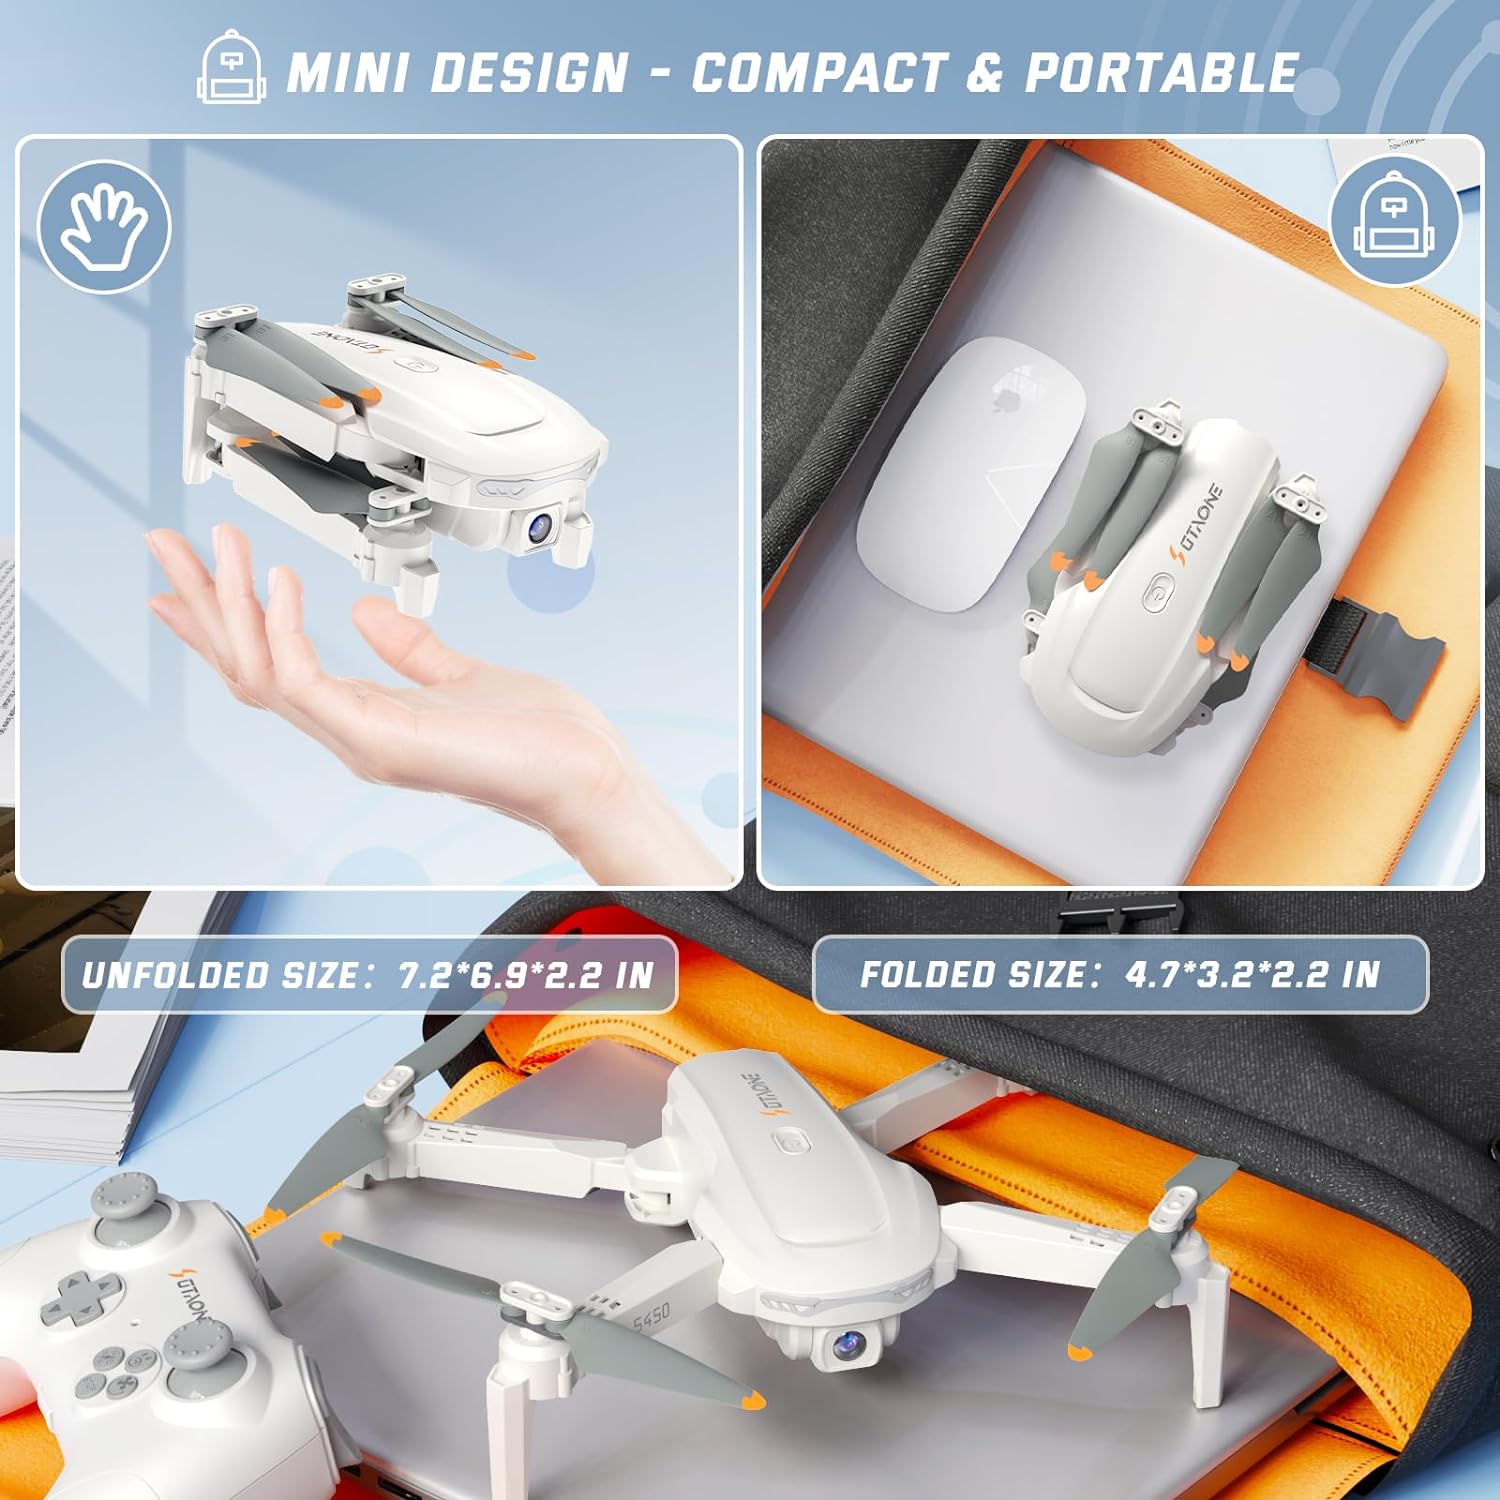 SOTAONE S450 Drone, MINI DESIGN COMPACT & PORTABLE UNFOLDED SI